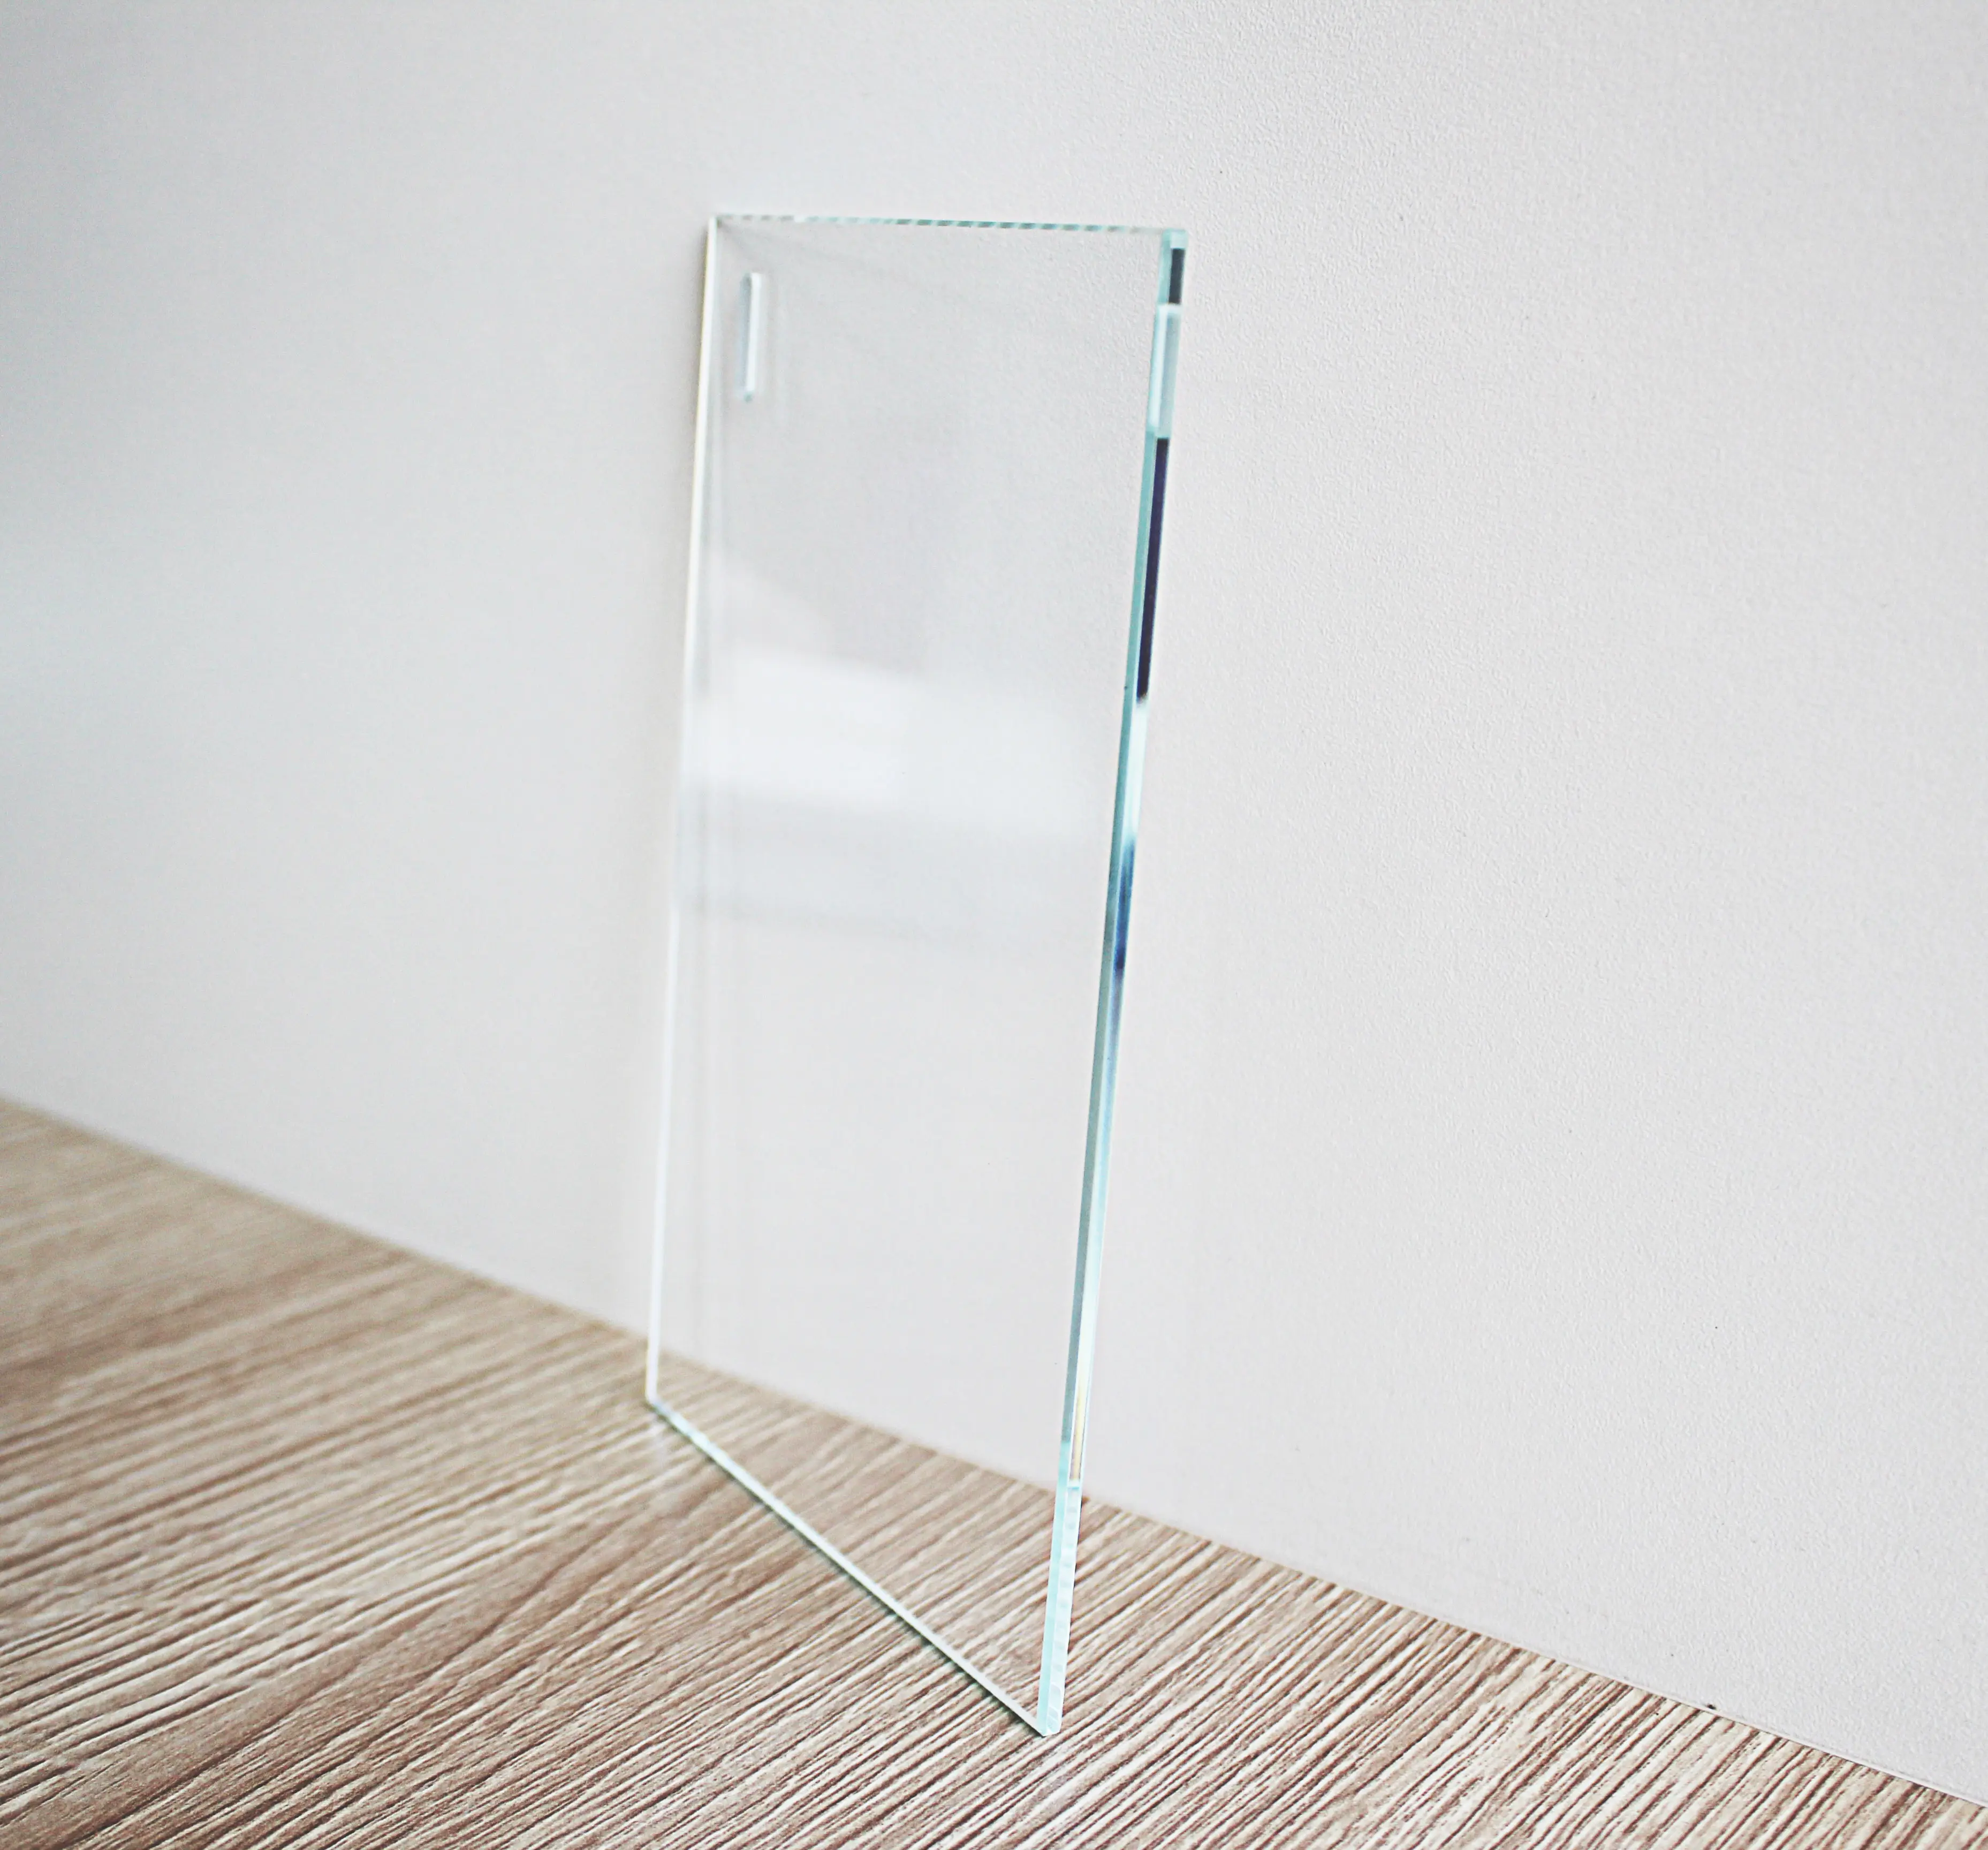 Groothandelsprijs China Clear Float Glasplaat 2Mm-19Mm Dikte Op Maat Gesneden Glas Voor Deur Raam Glazen Scheidingswand